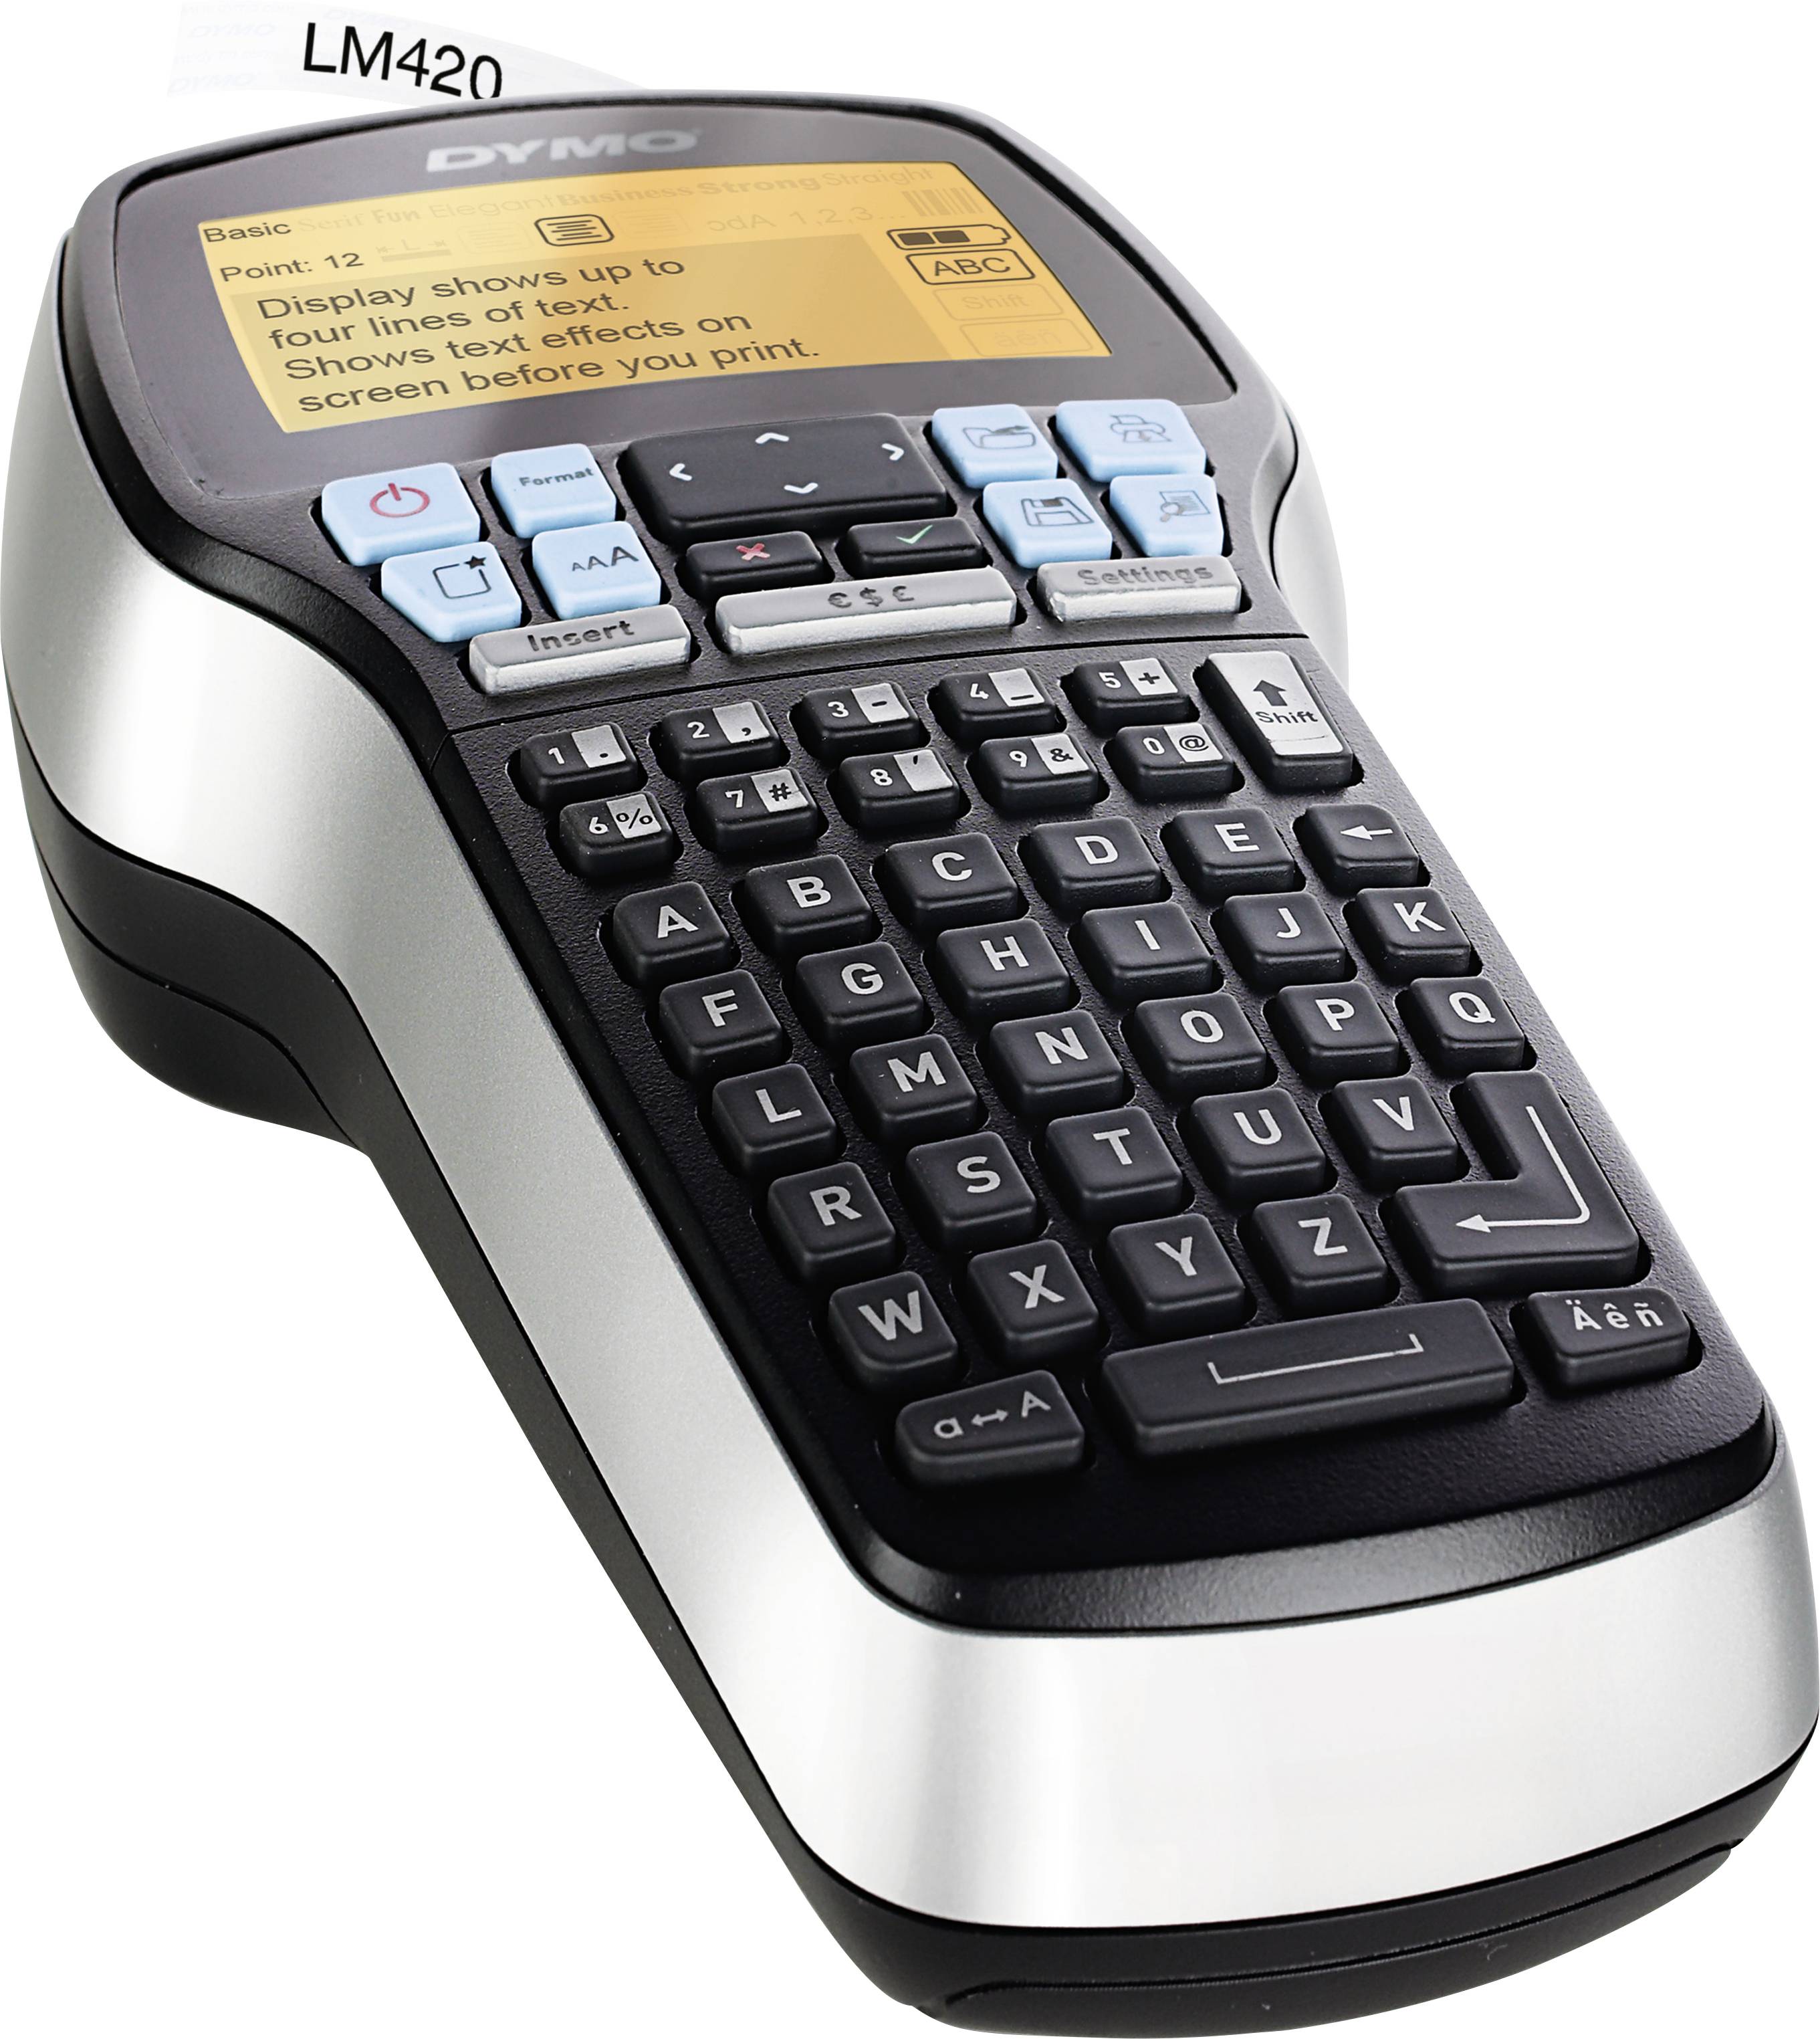 ABC-Tastatur Bandsystem, D1-Bänder: 6, 9, 12, 19 mm Selbstklebend, für den Drucker LabelManager, 12 mm x 7 m Rolle + D1-Etiketten schwarz auf weiß Dymo LabelManager 420P Etikettiergerät